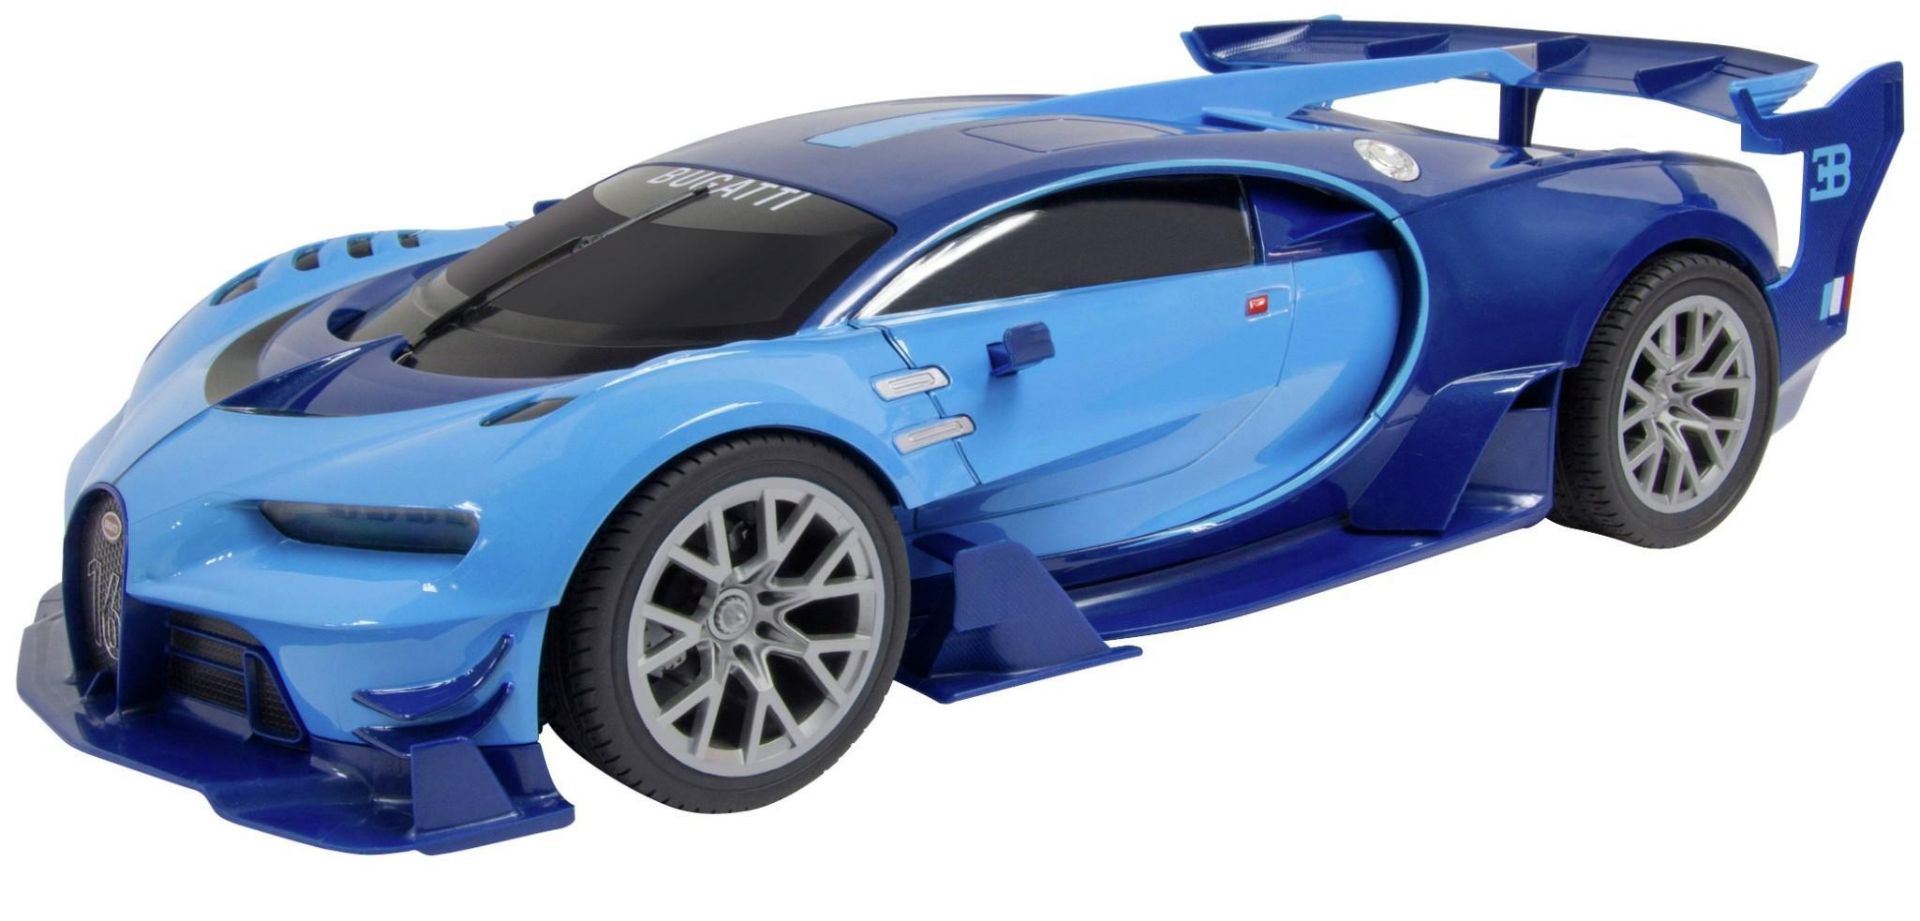 Gearmaz Radio Controlled Bugatti Vision GT 1:26, £12.99 RRP